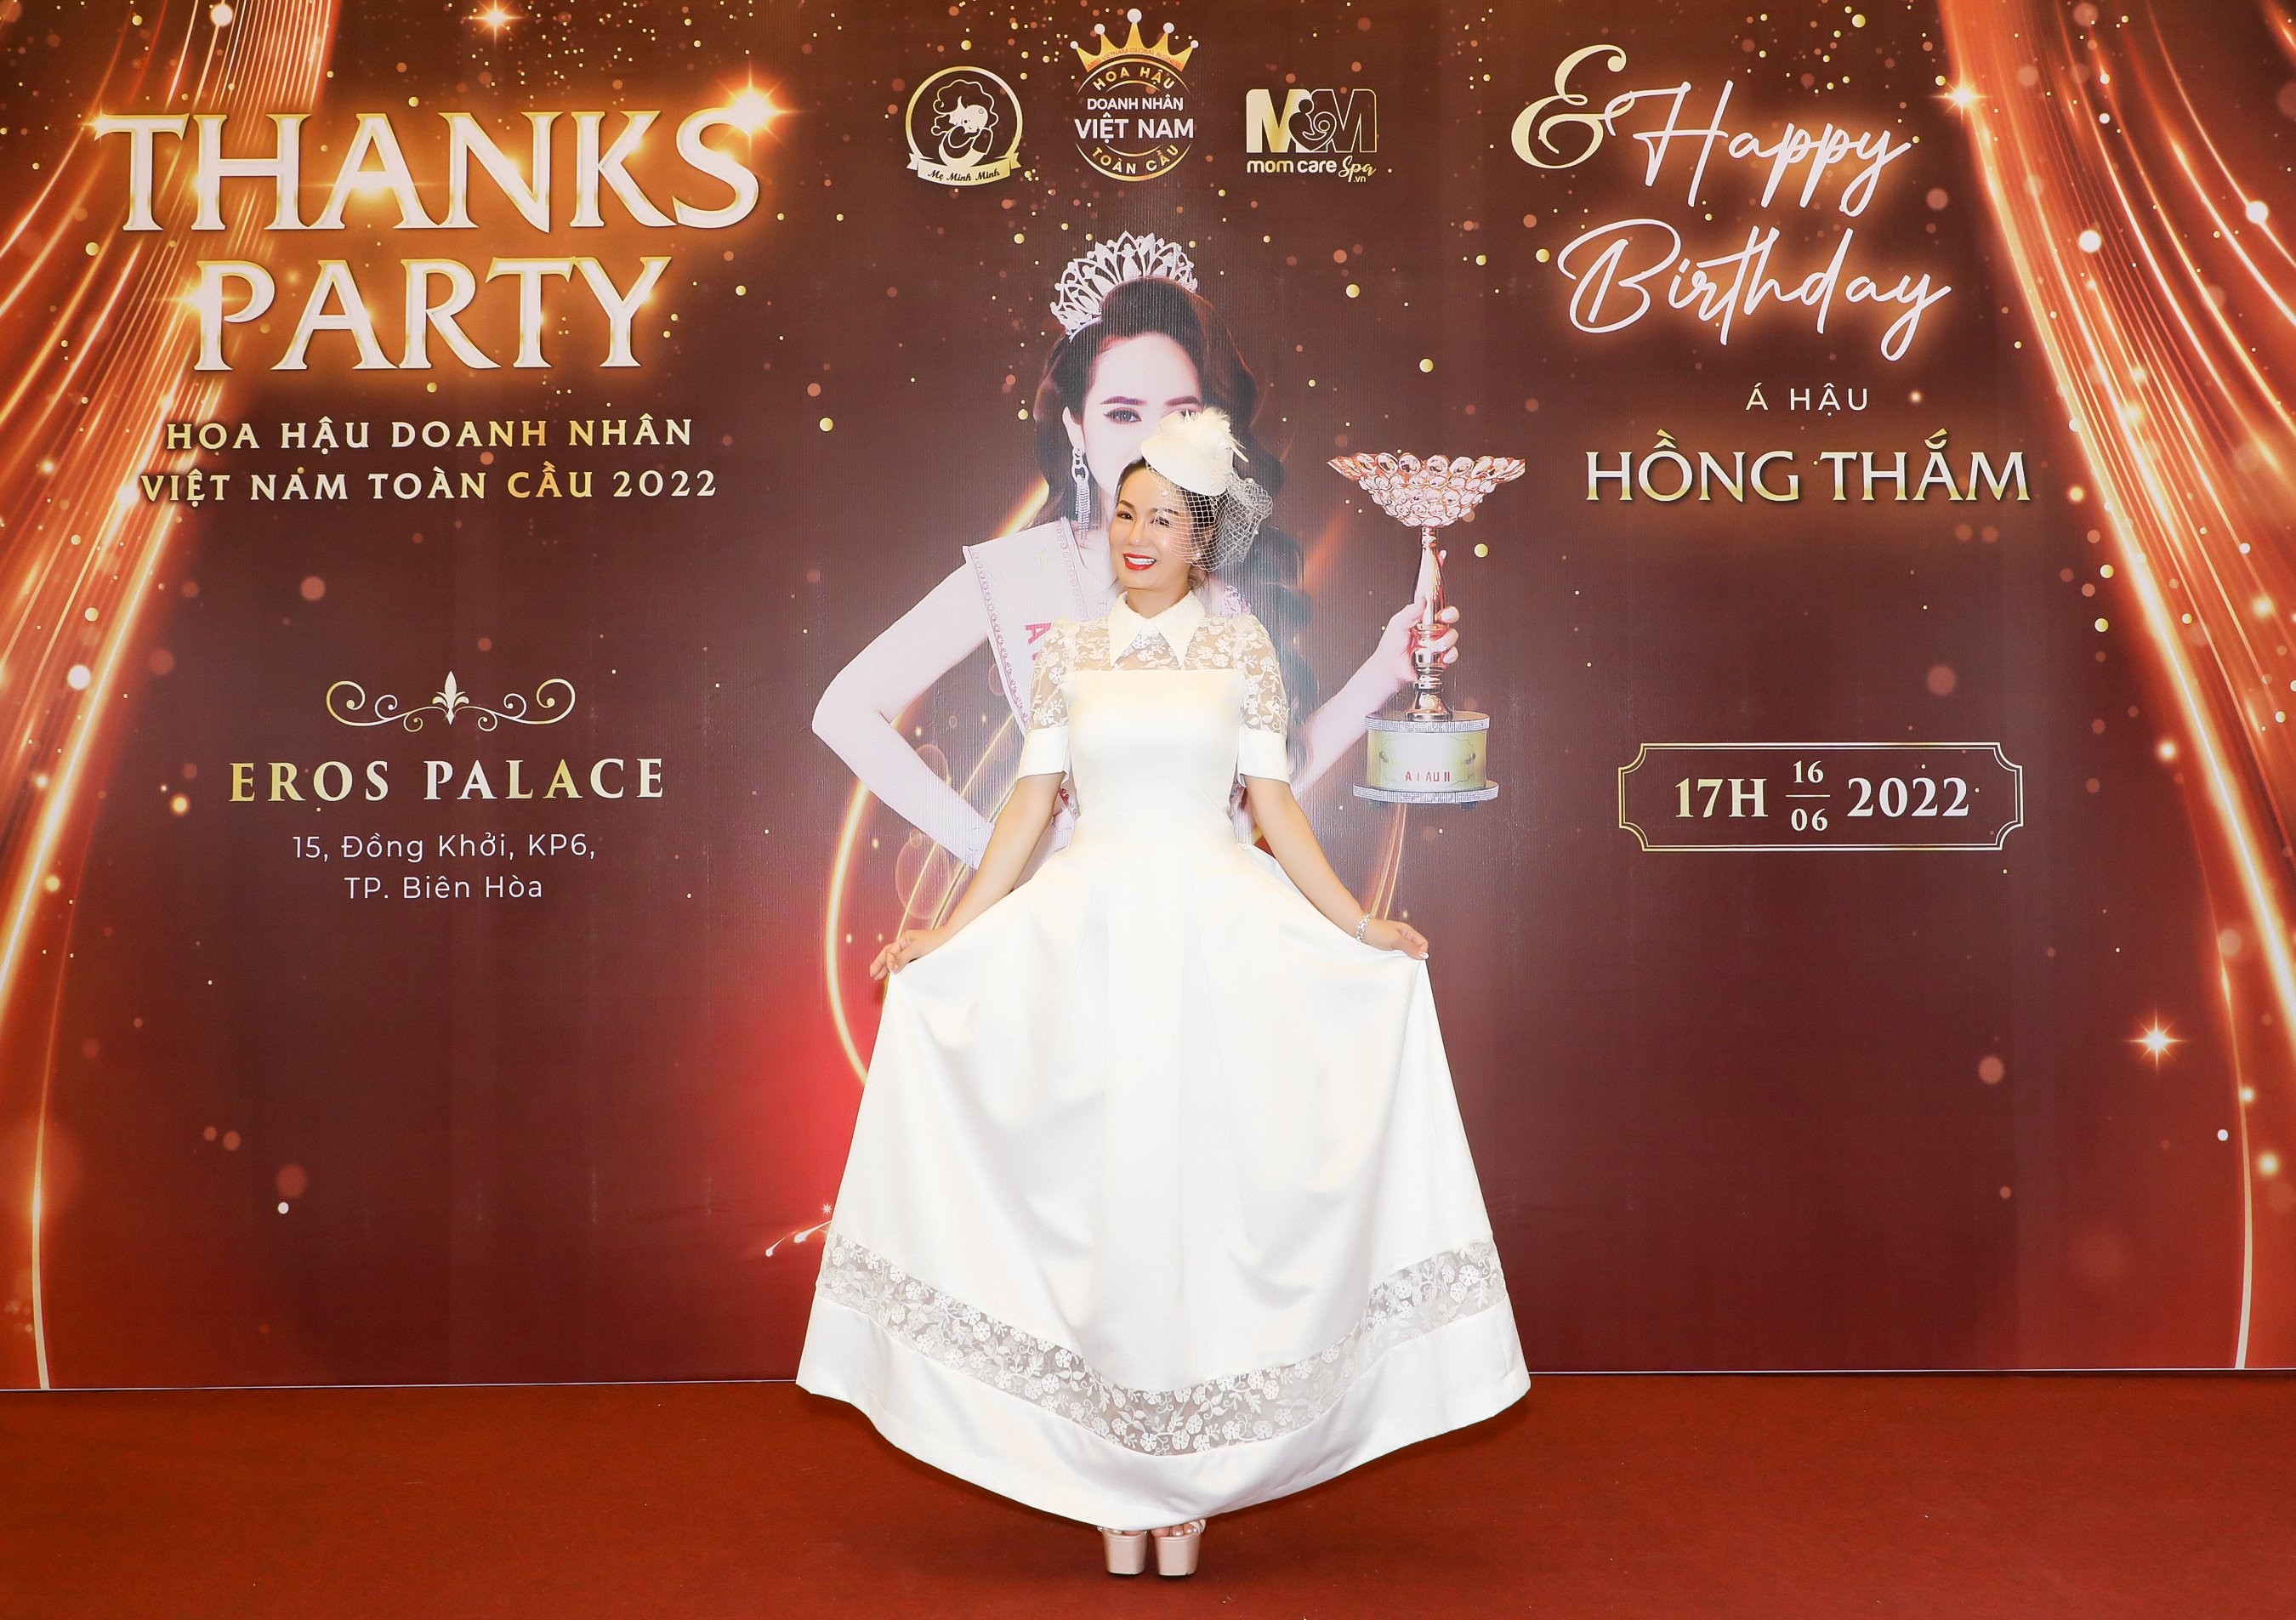 Hoa hậu Võ Thị Ngọc Giàu phong cách sang trọng trong đêm tiệc ...